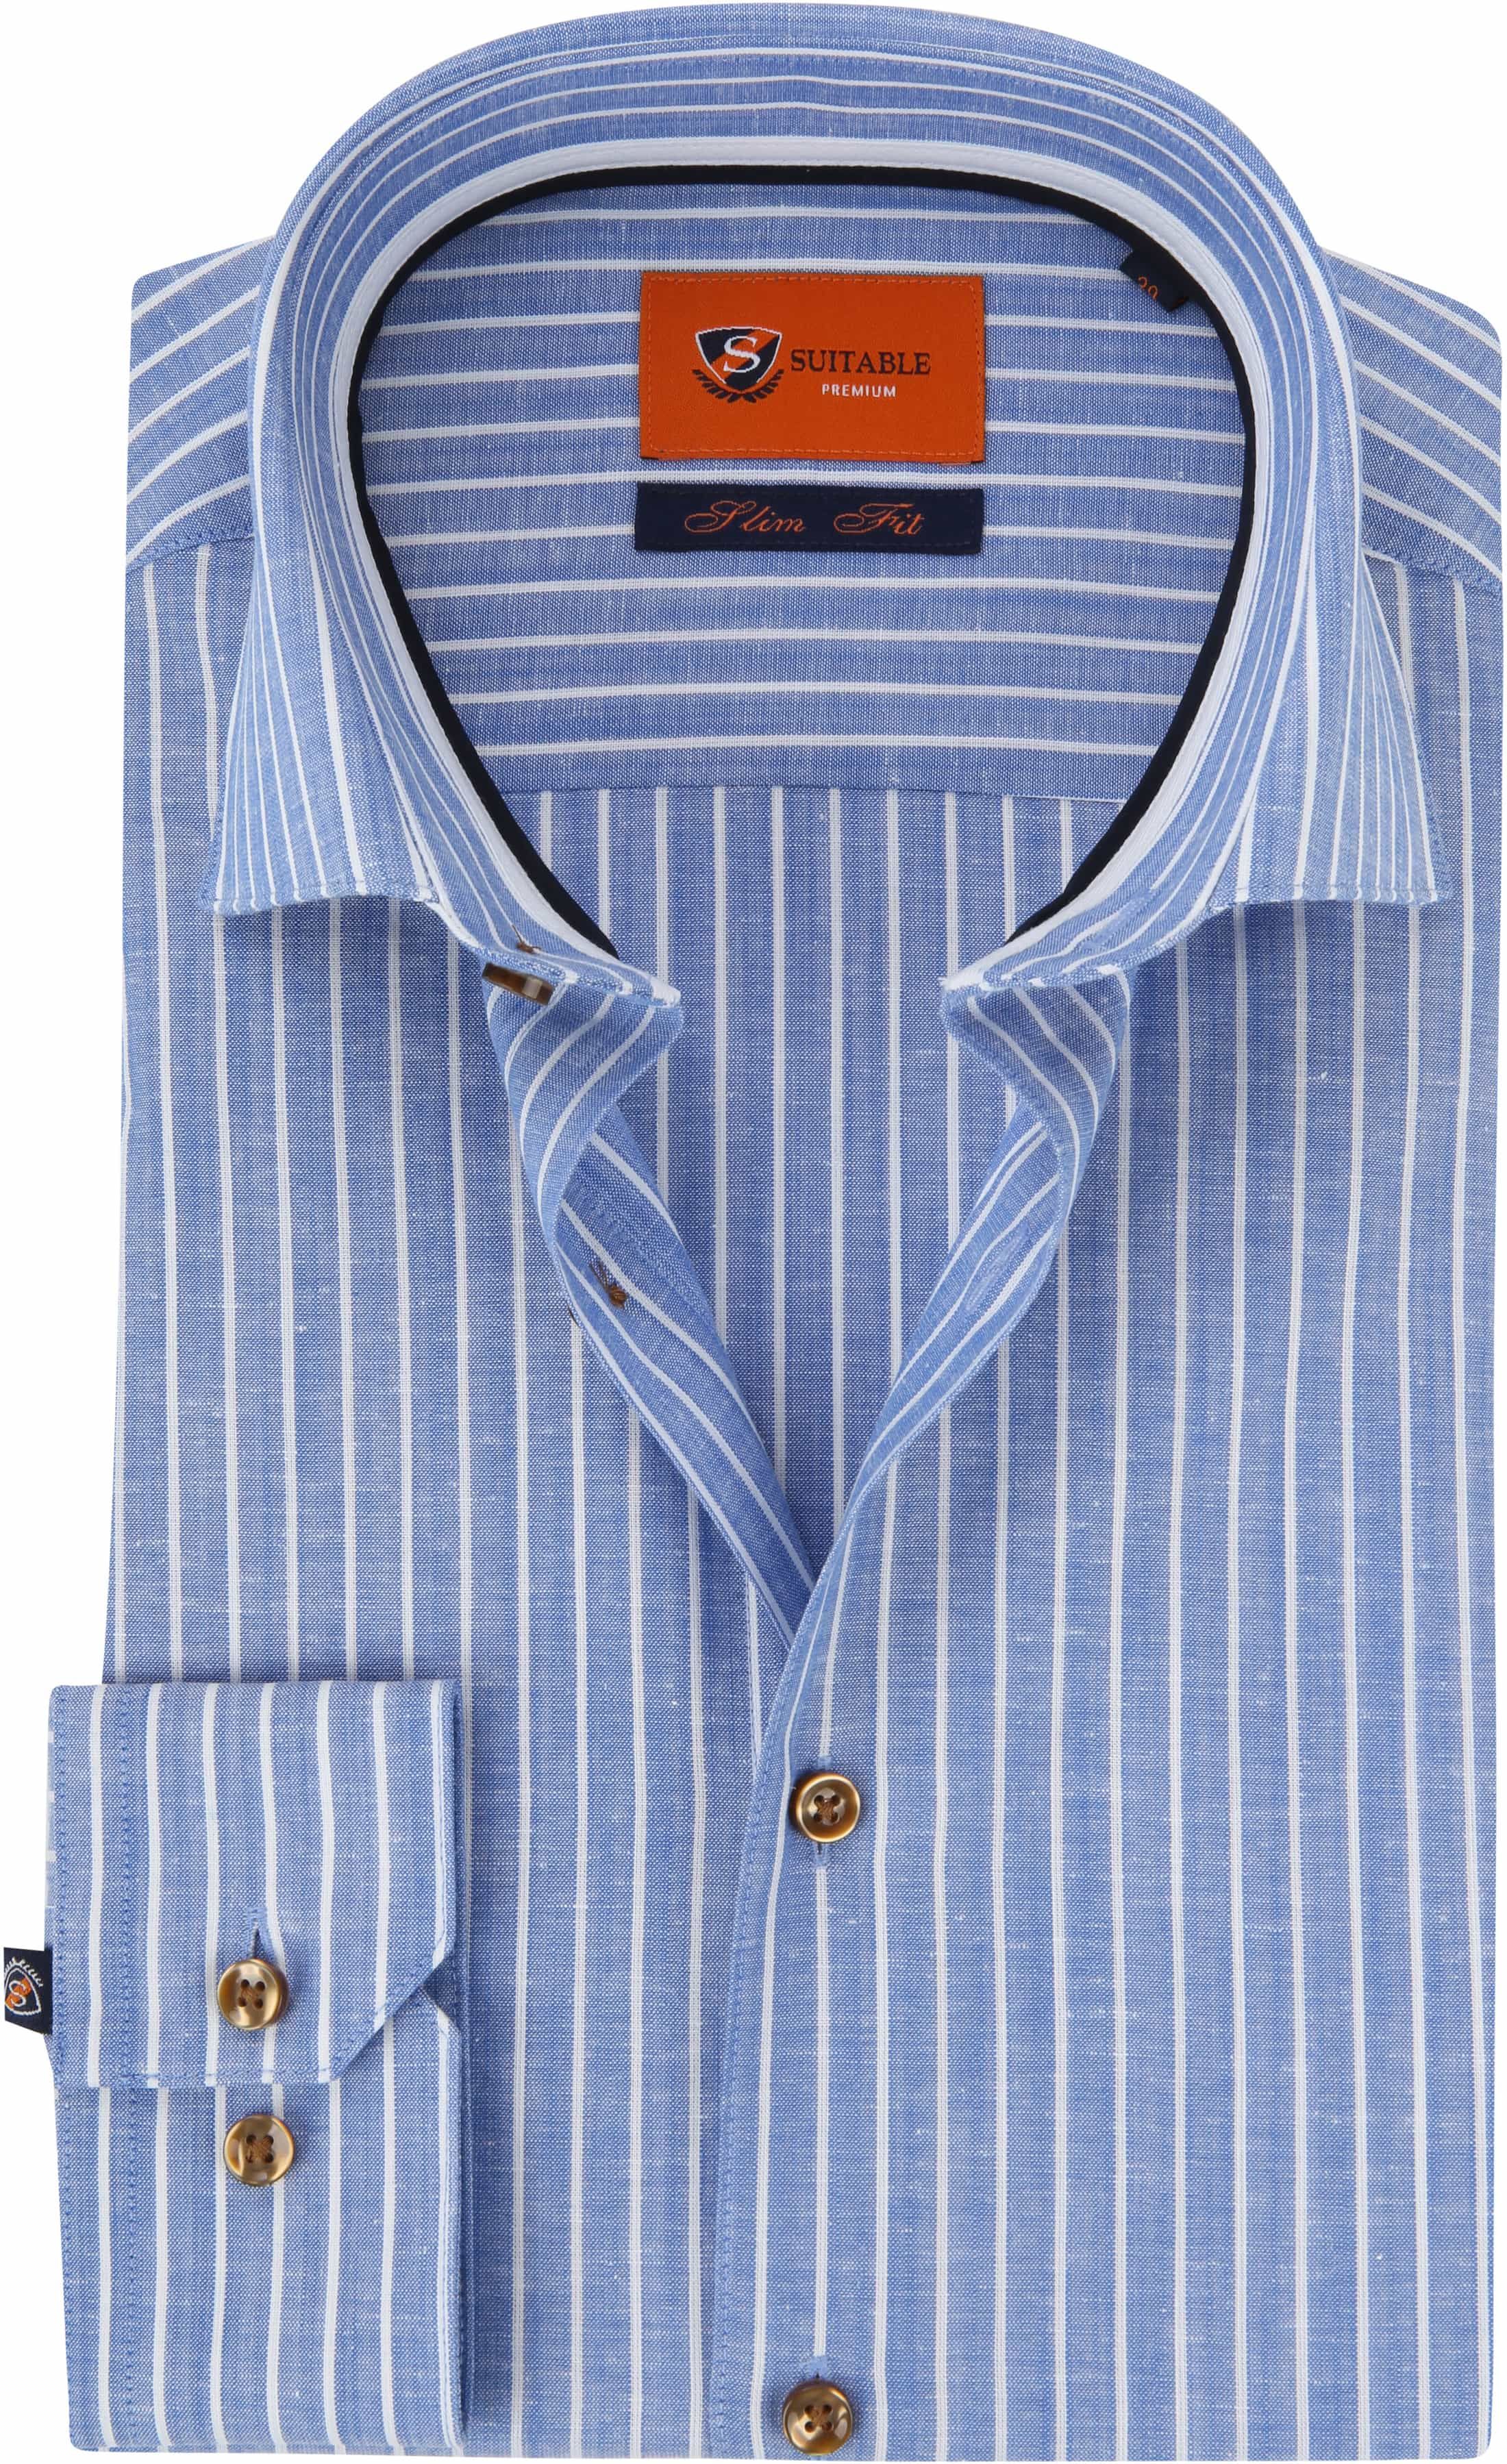 Suitable Shirt WS Royal Stripe Blue size 15 3/4